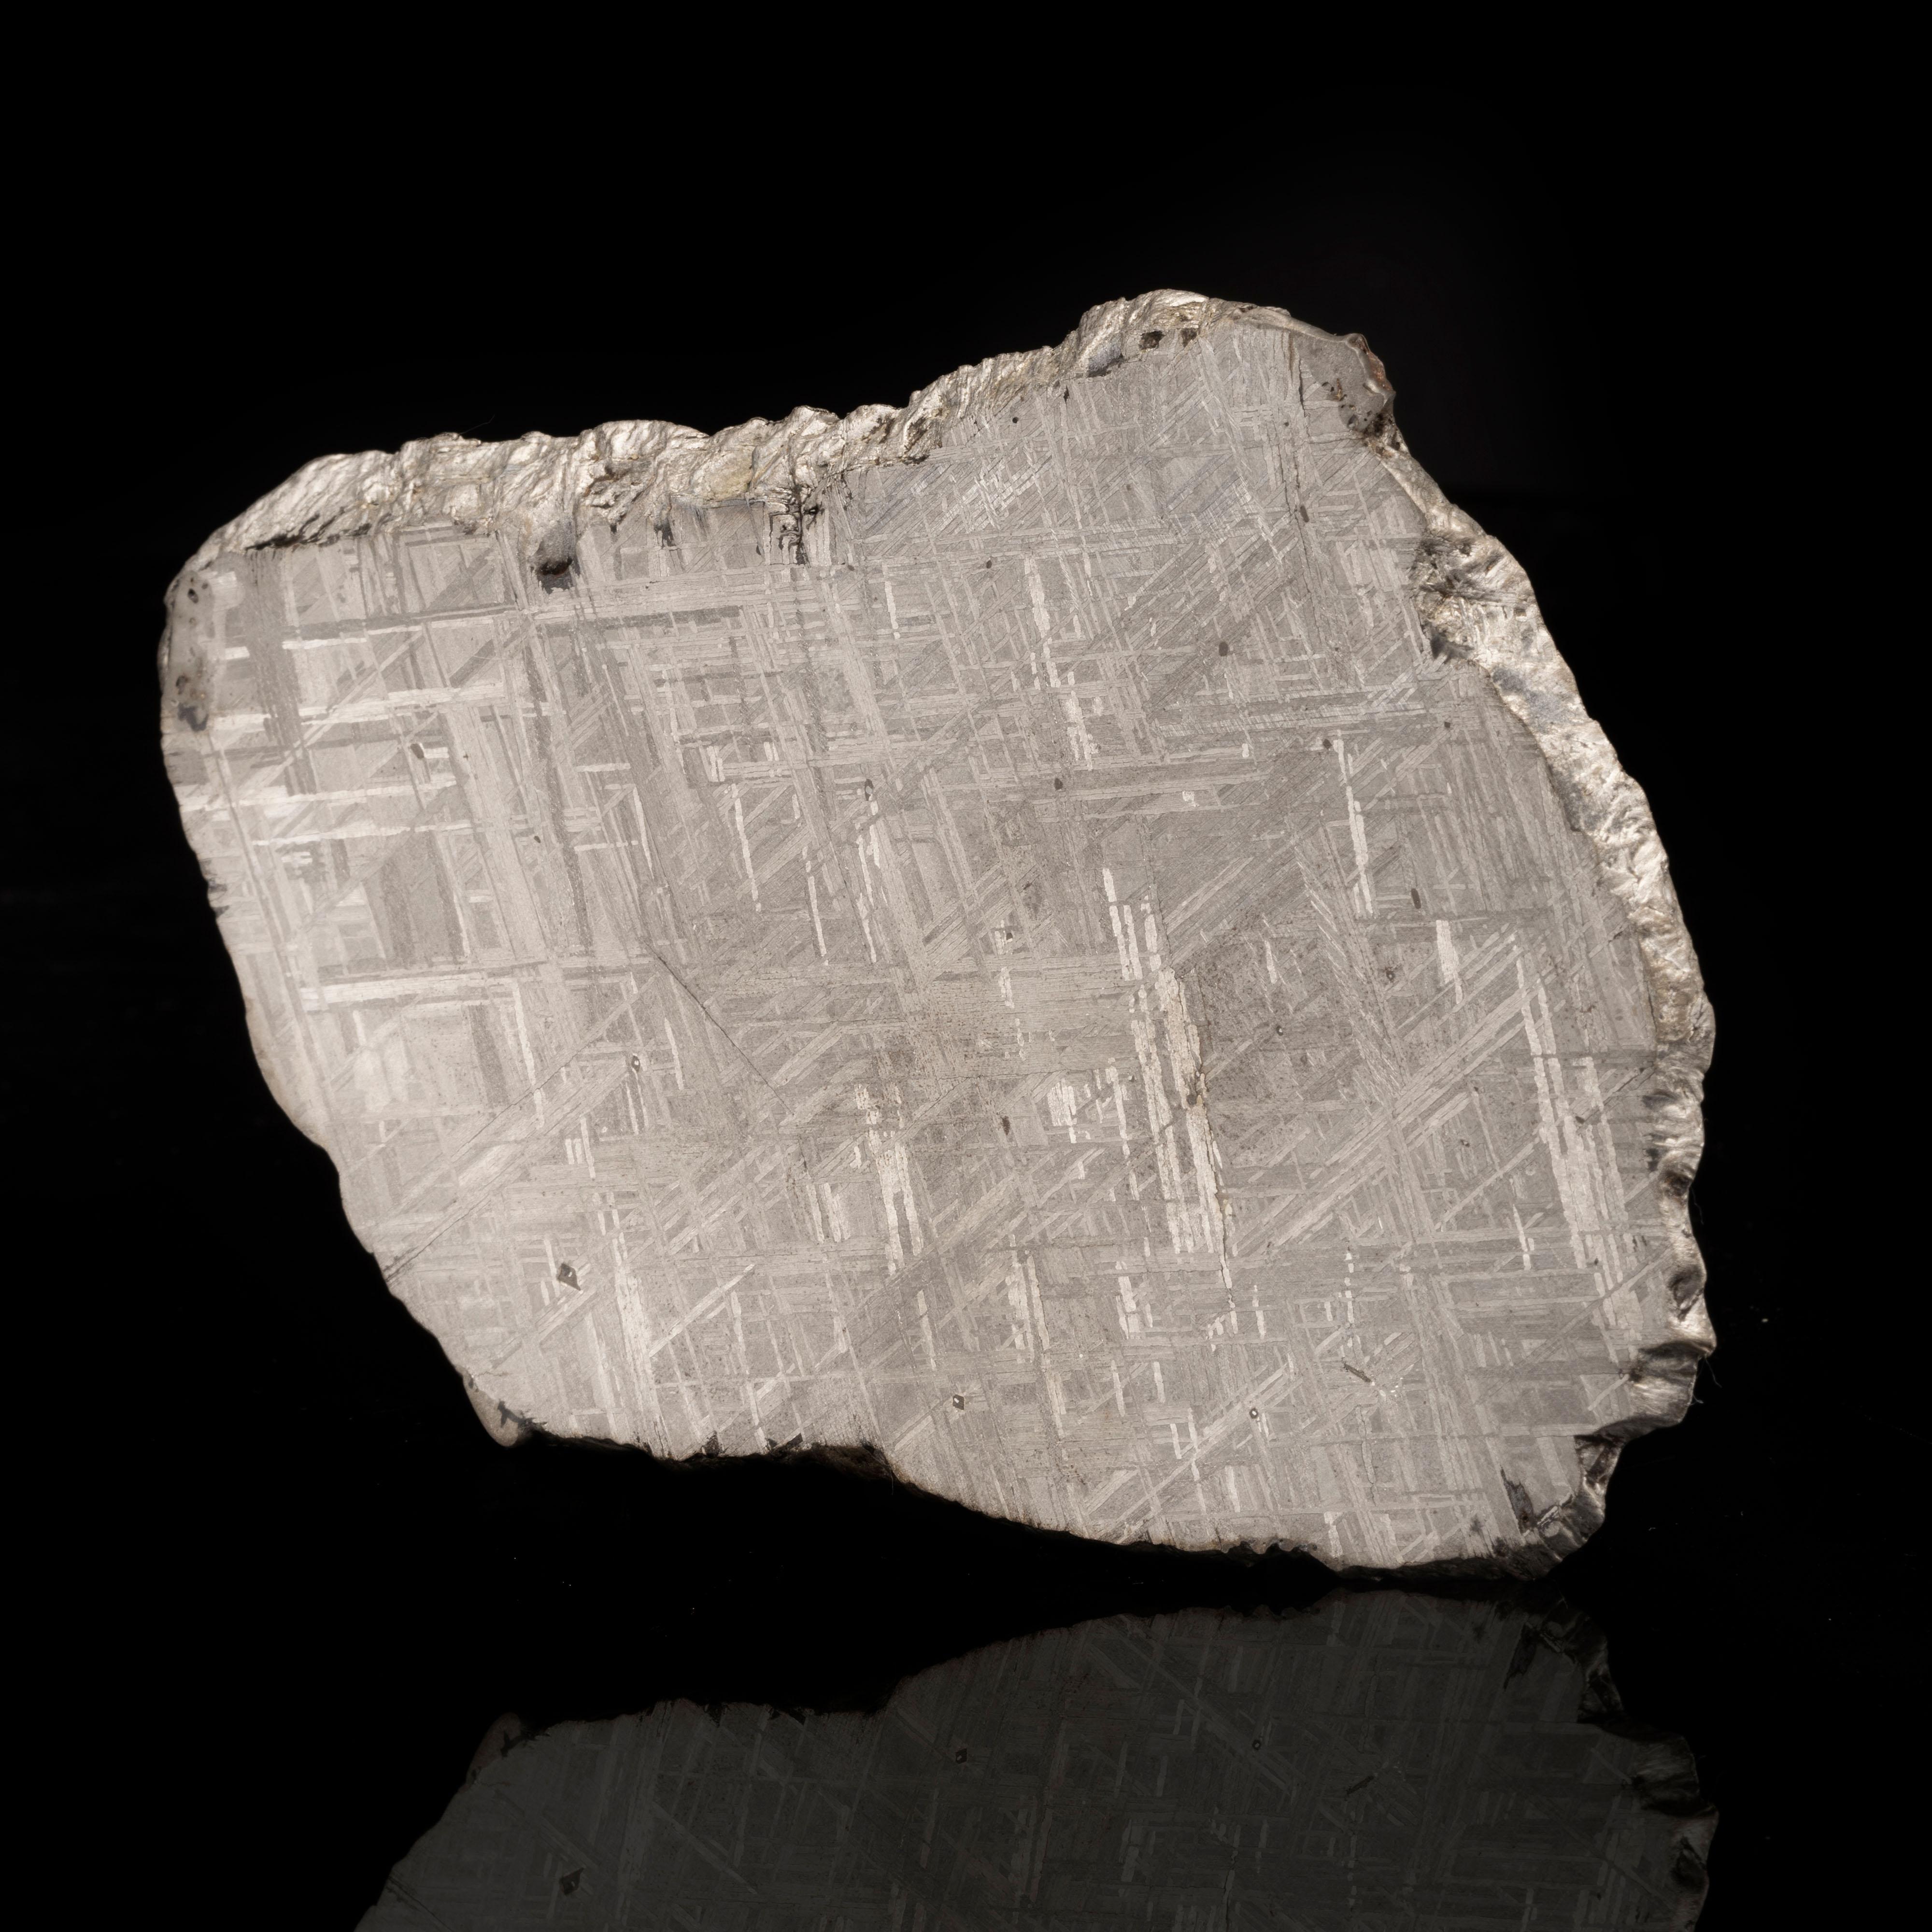 Dieses beeindruckende 362-Gramm-Scheibchen zeigt die Schönheit des Muonionalusta-Meteoriten. Er wurde in Scheiben geschnitten und poliert, um die natürlichen Ätzungen, die beim Eintritt der Muonionalusta in die Atmosphäre entstanden, hervorzuheben.